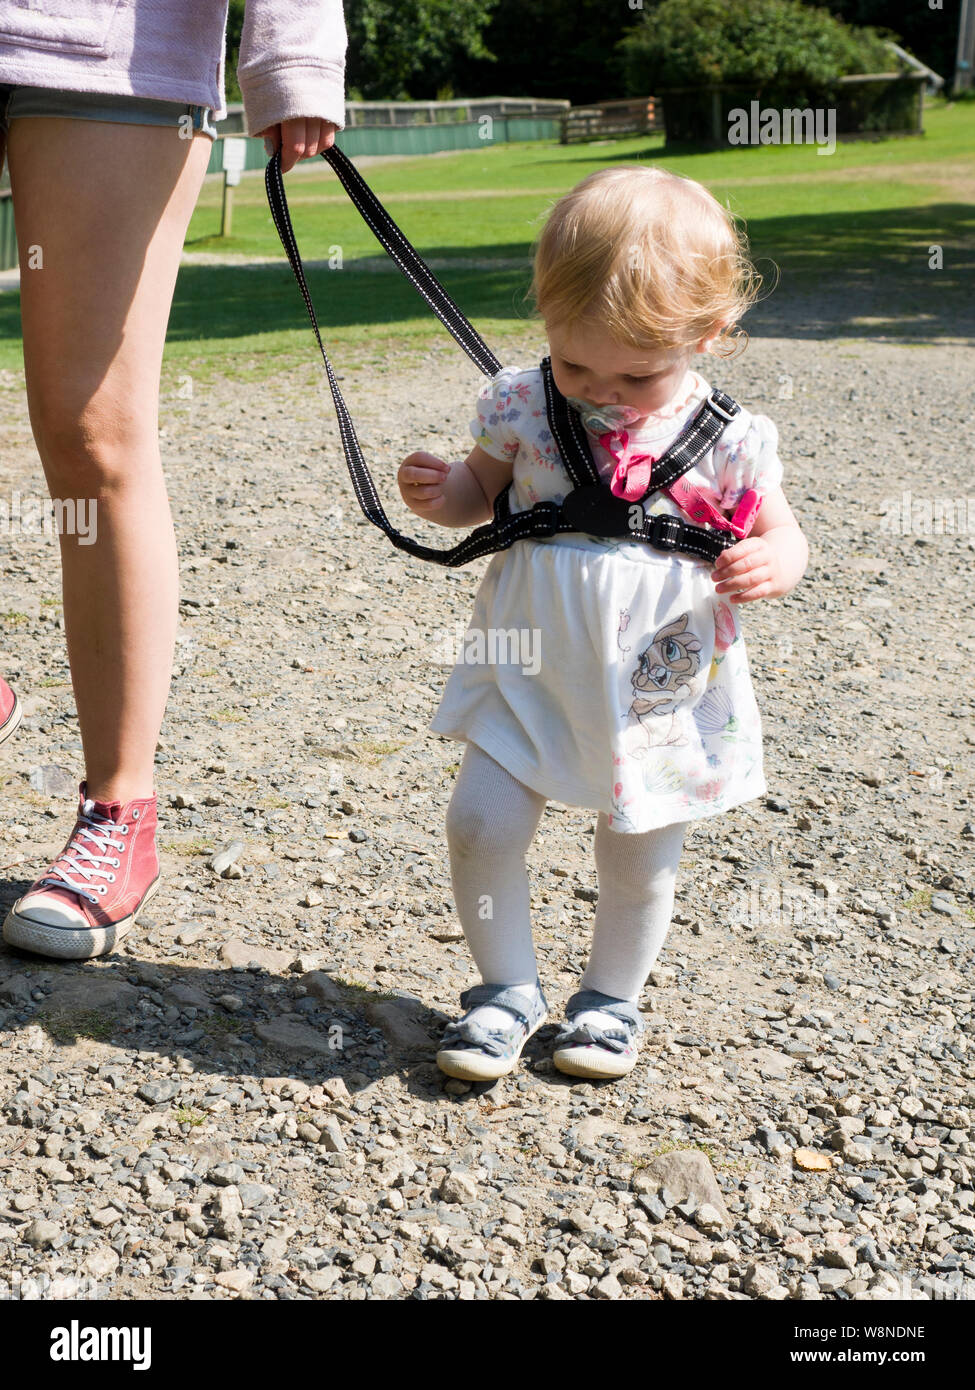 Toddler walking on reins, UK Stock Photo